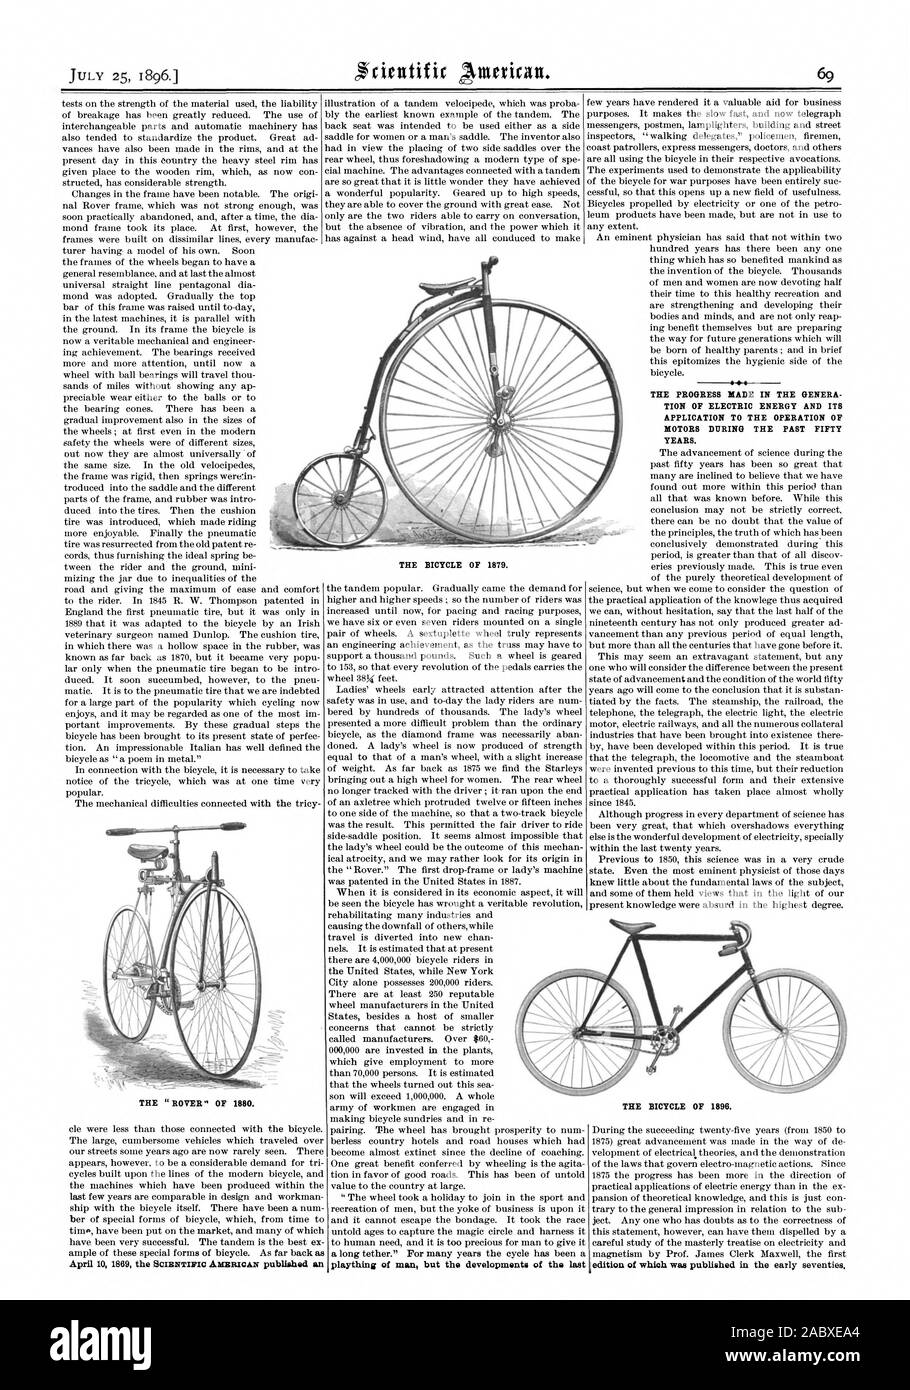 Il ROVER DEL 1880. I progressi compiuti nei generi ZIONE DI ENERGIA  ELETTRICA E LA SUA APPLICAZIONE AL FUNZIONAMENTO DEI MOTORI durante gli  ultimi cinquant'anni. La bicicletta di 1896. La bicicletta di